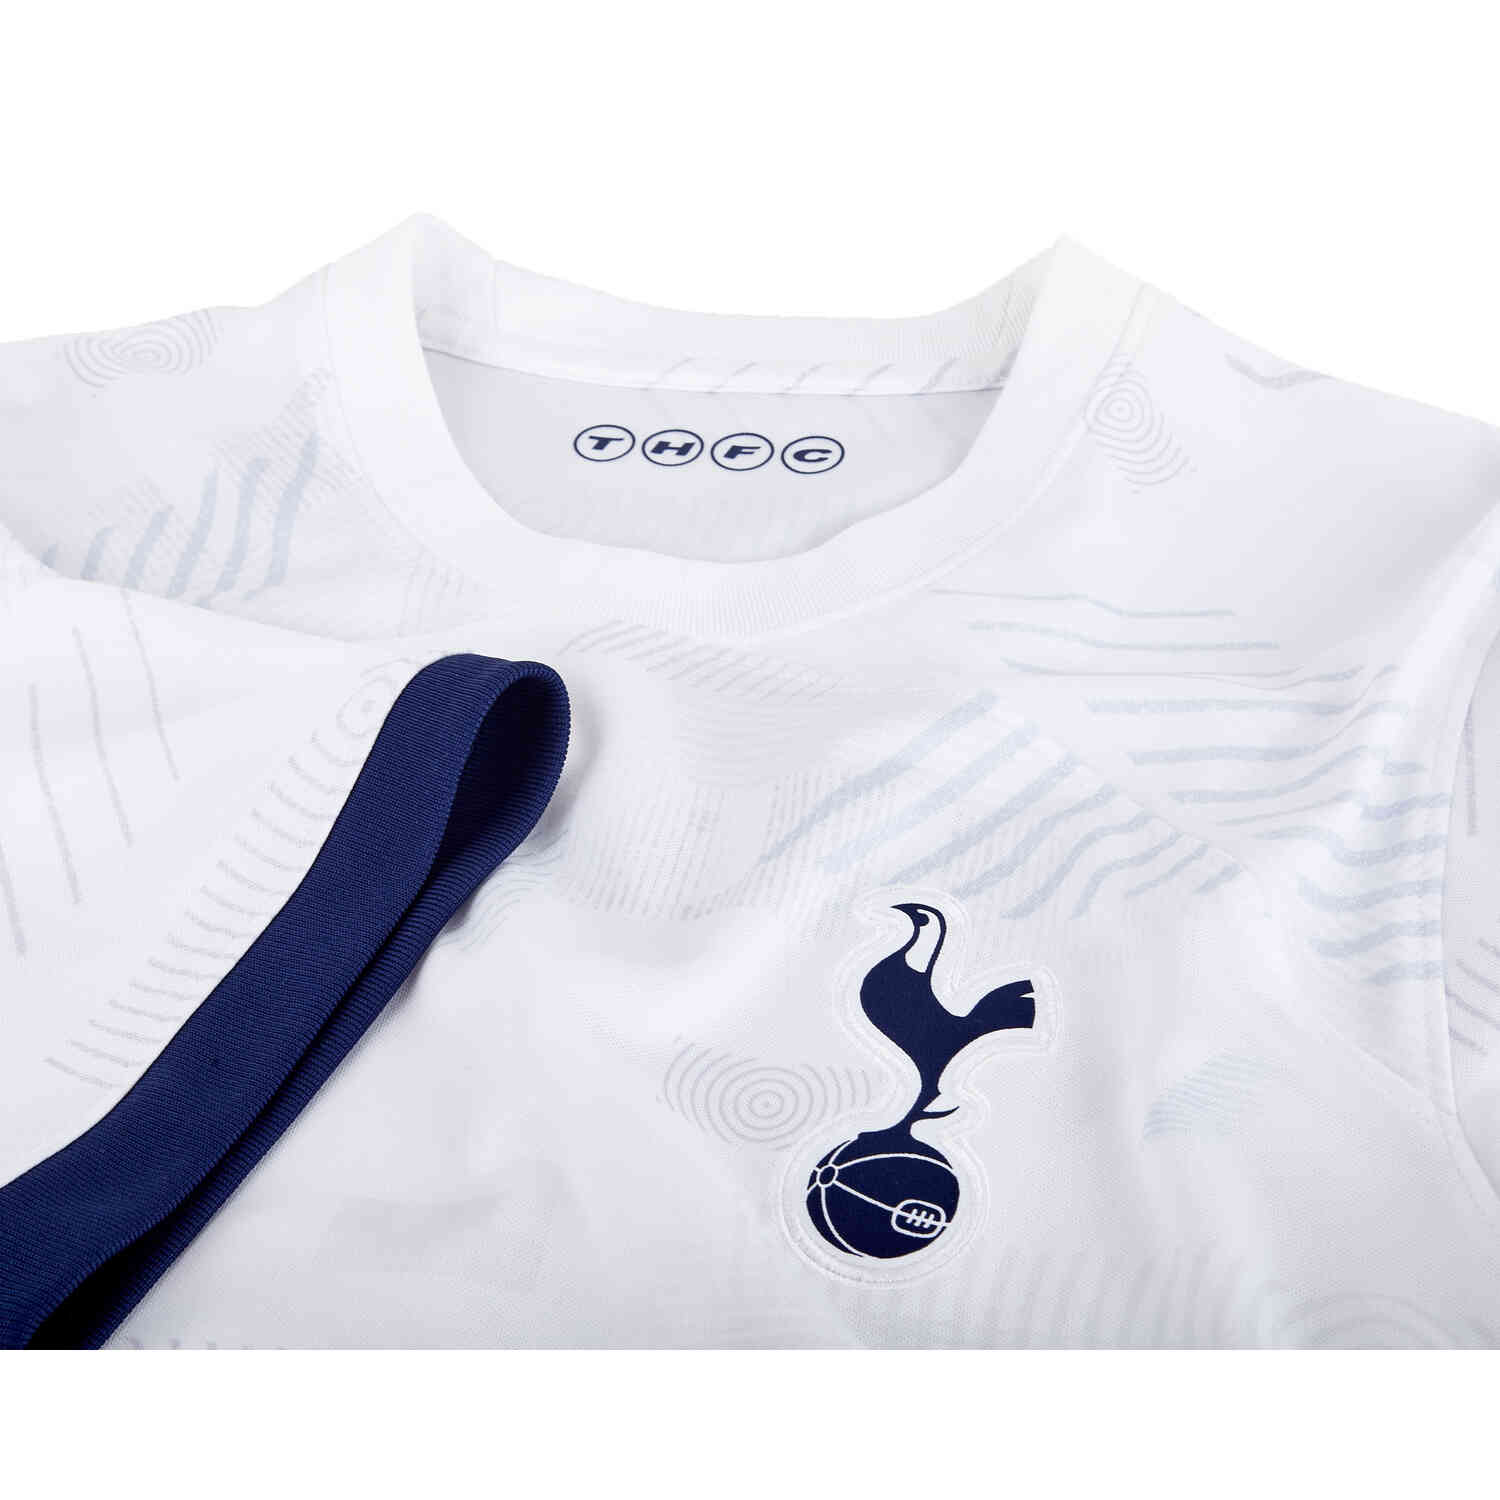 Women's Replica Nike Tottenham Hotspur Third Jersey 23/24 - Size XL